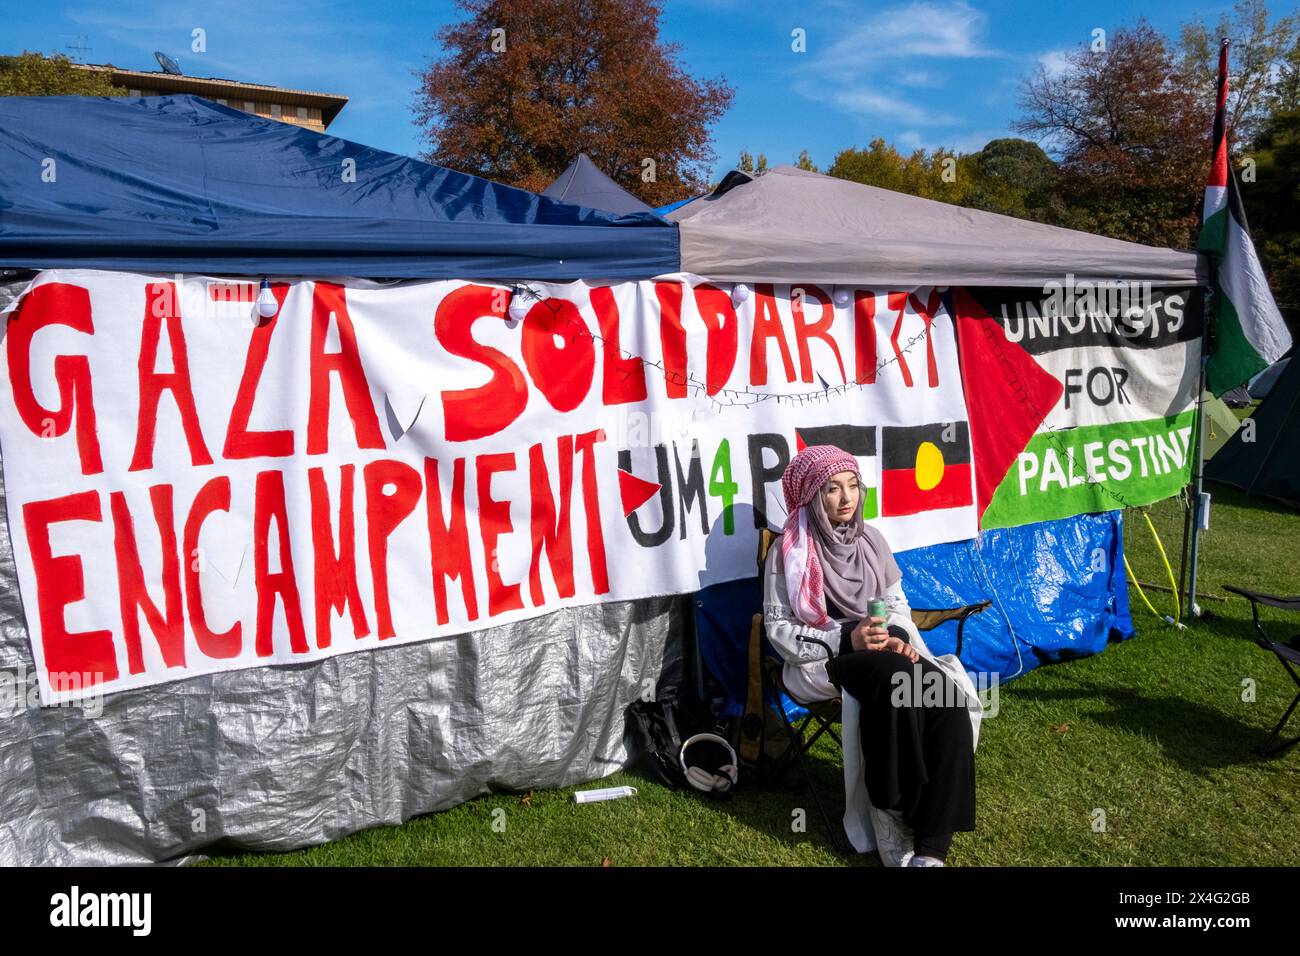 Une femme arabe dans le campement pro-palestinien des étudiants dans le terrain de l'Université de Melbourne. Melbourne, Victoria, Australie. Banque D'Images